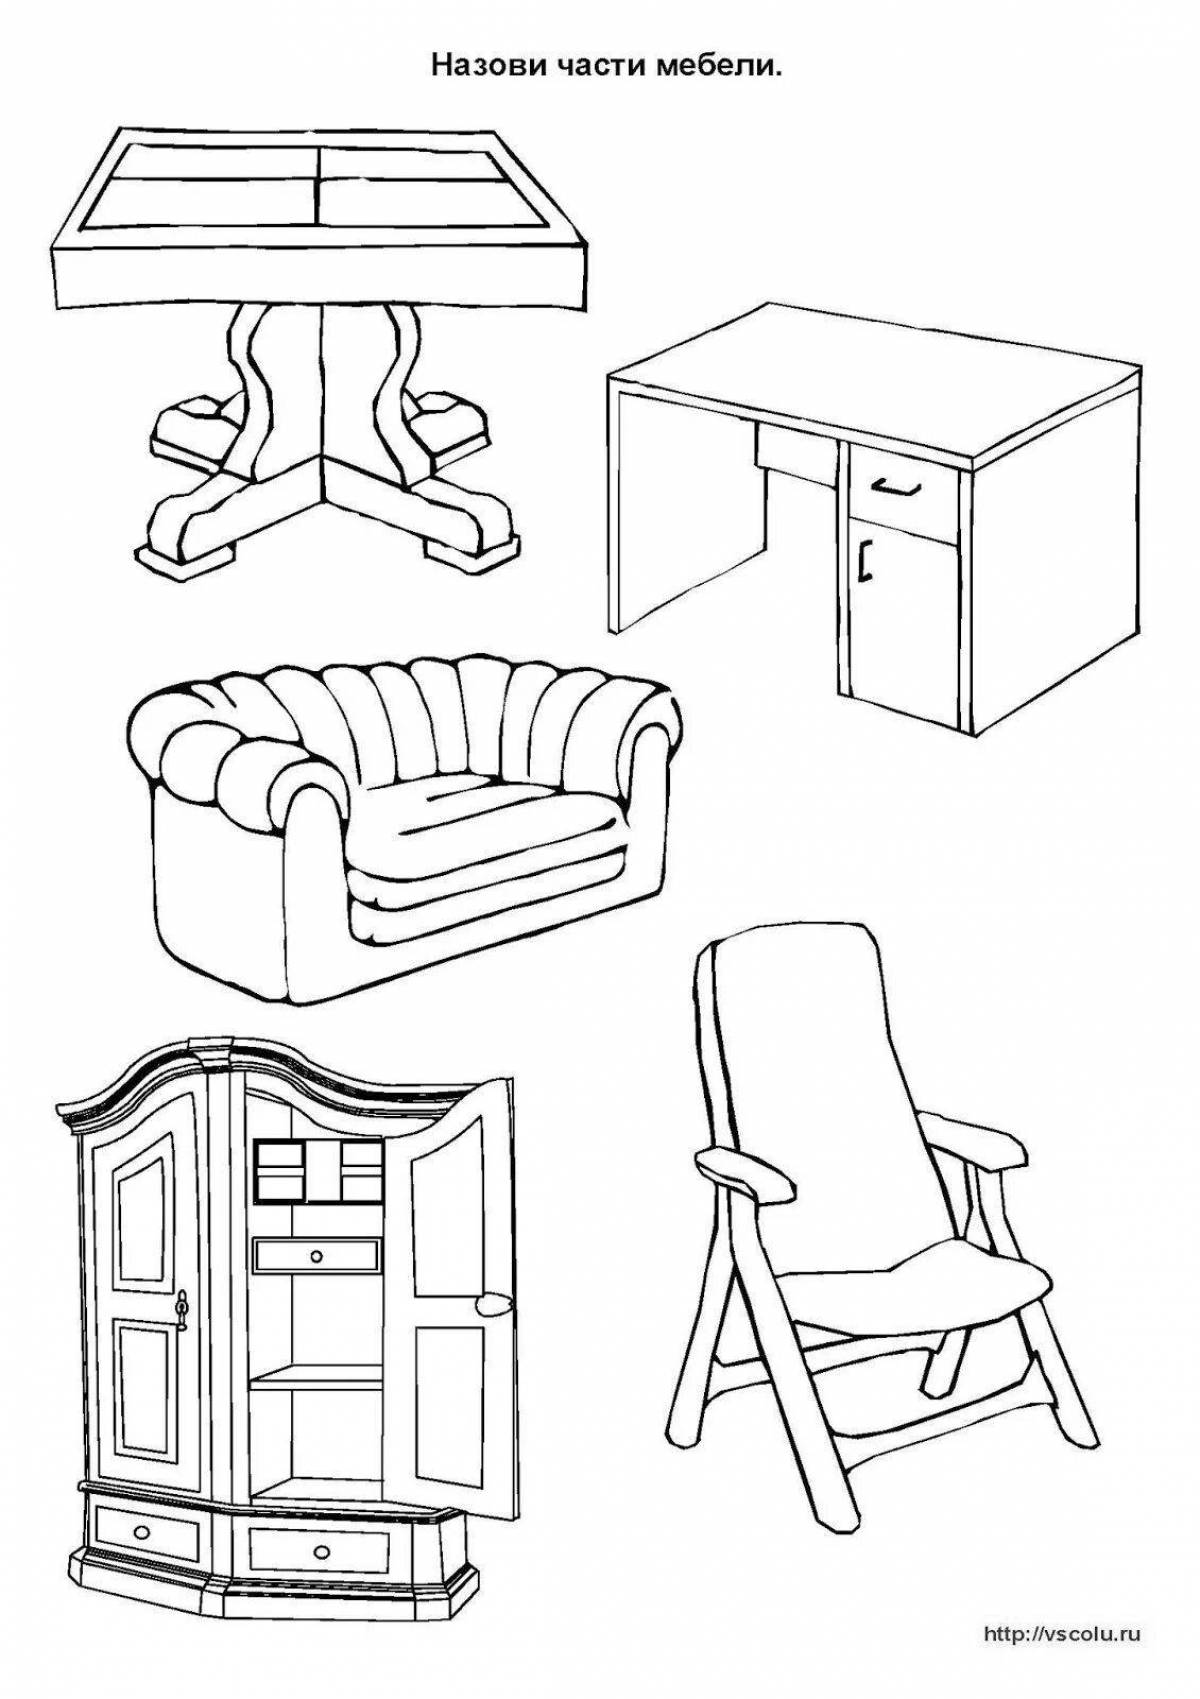 Части мебели